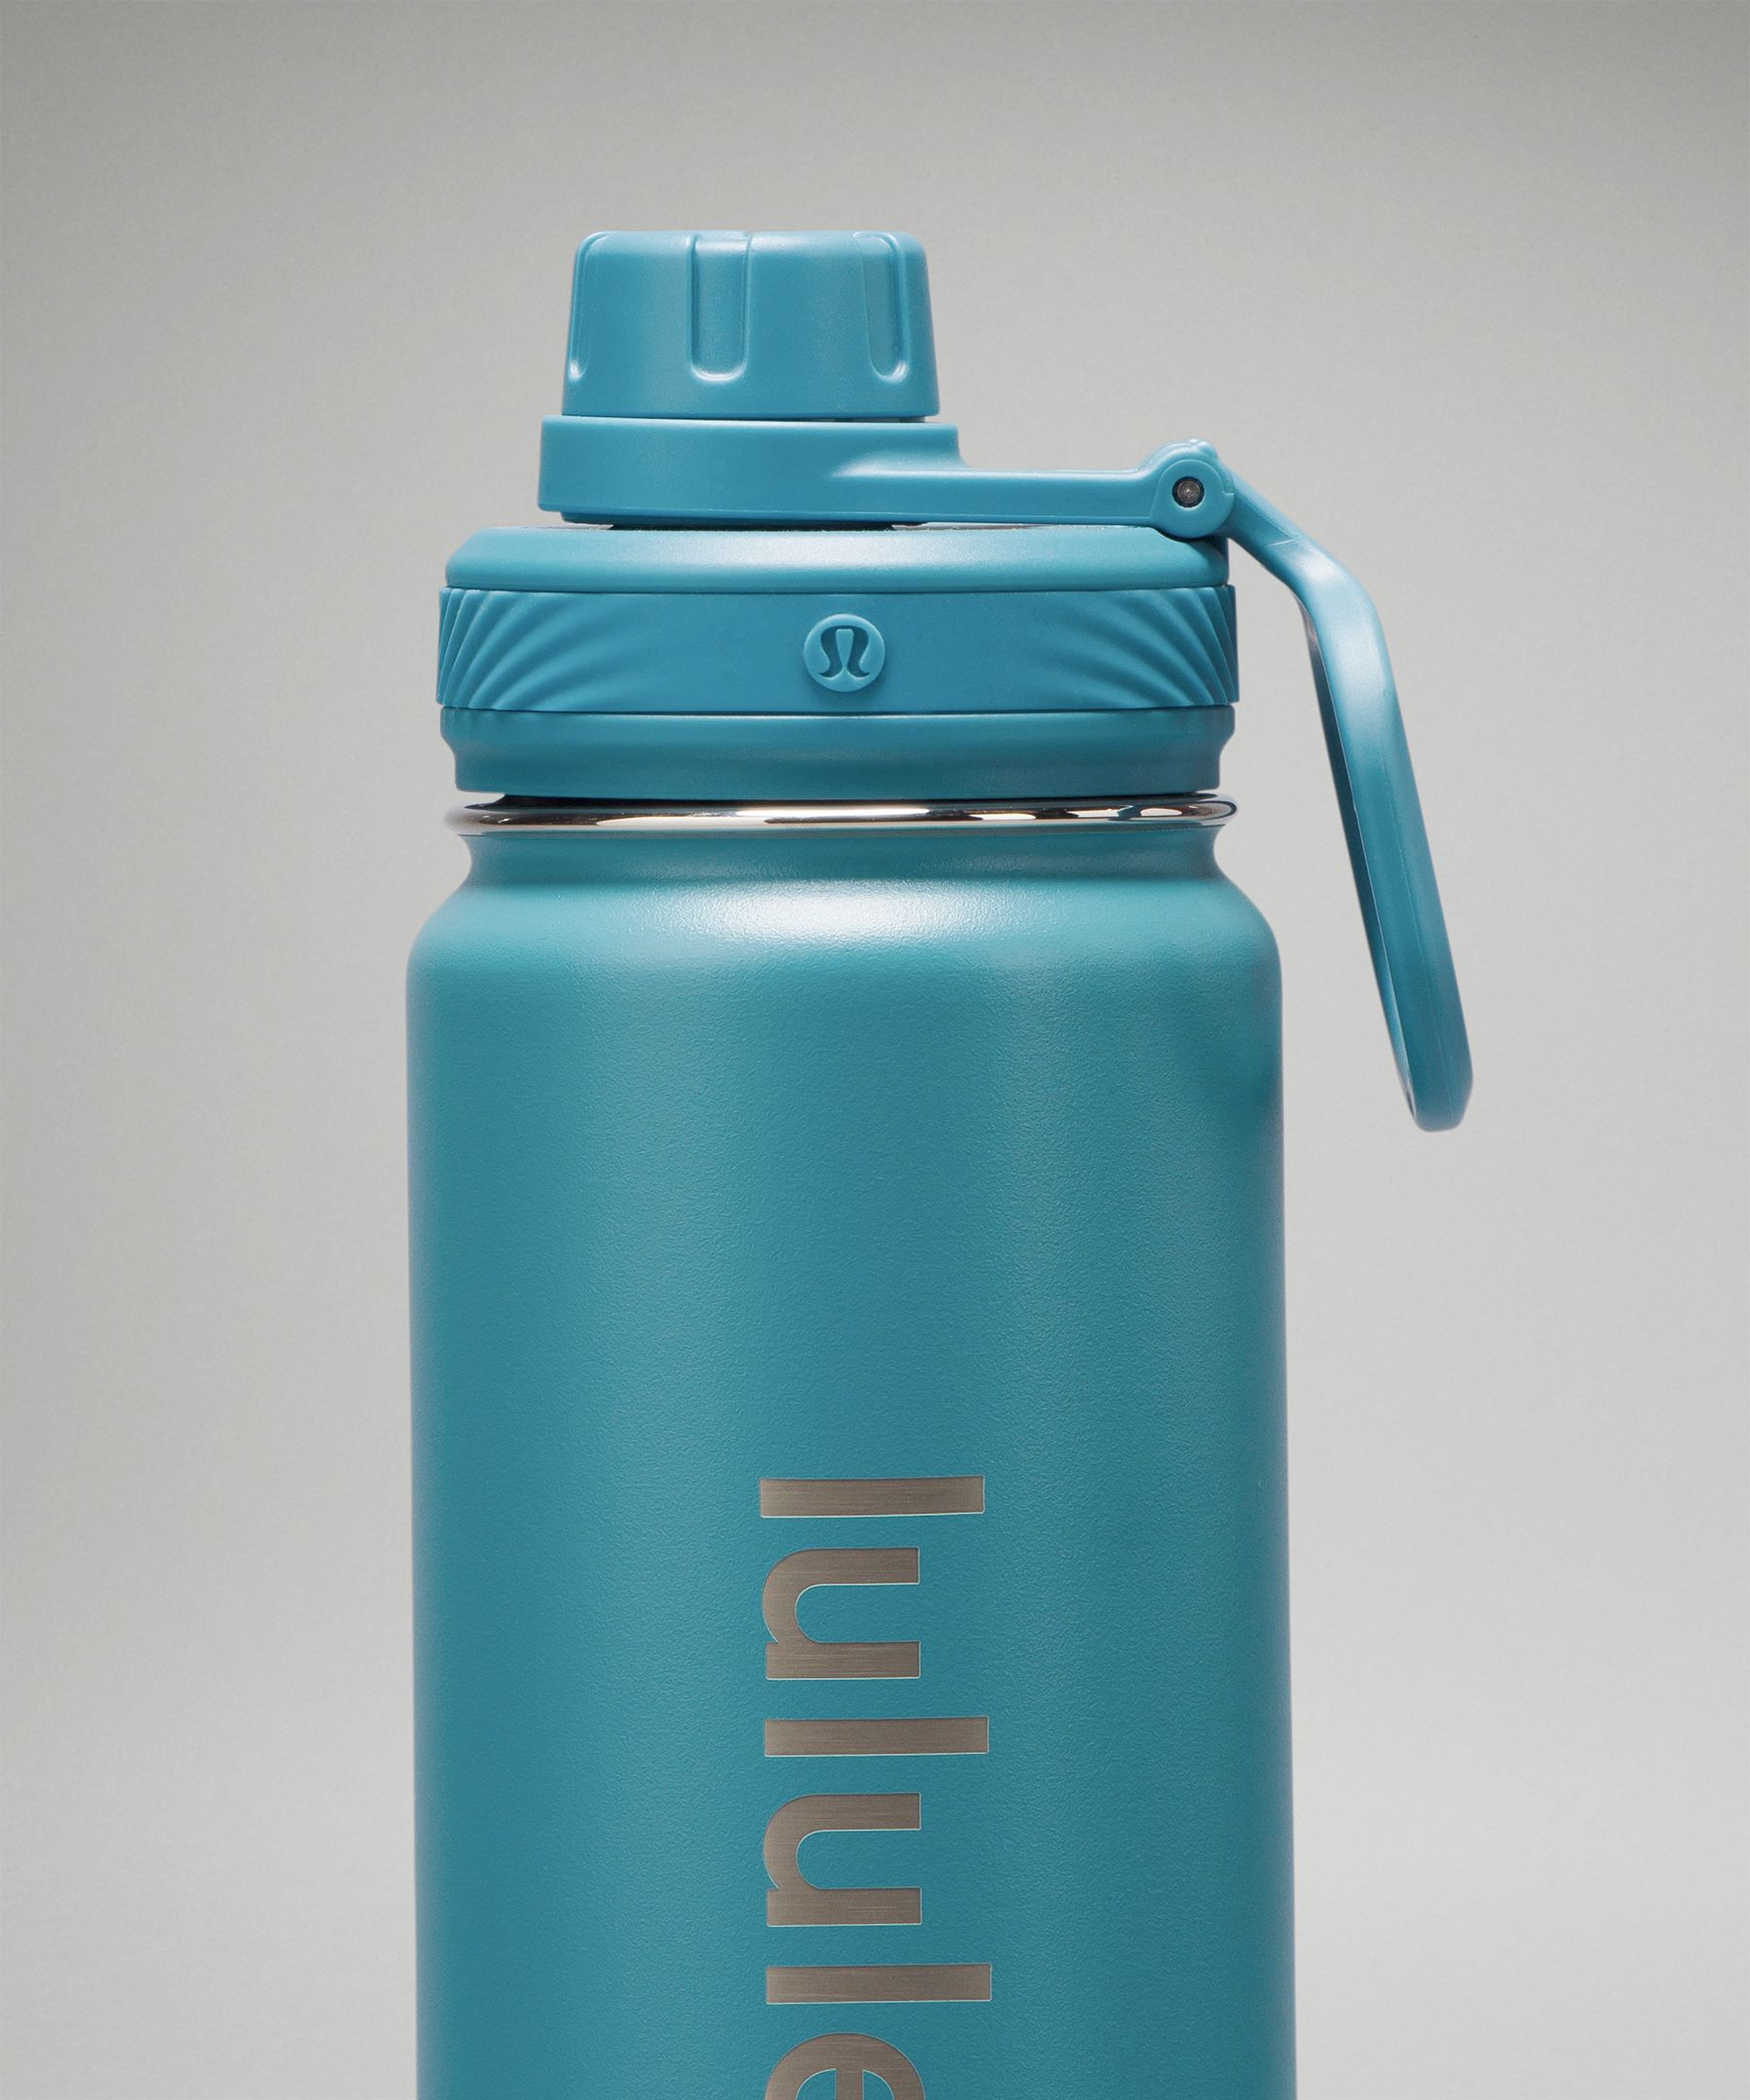 Lululemon Training Back to Life Sport Bottle 24oz - Blue